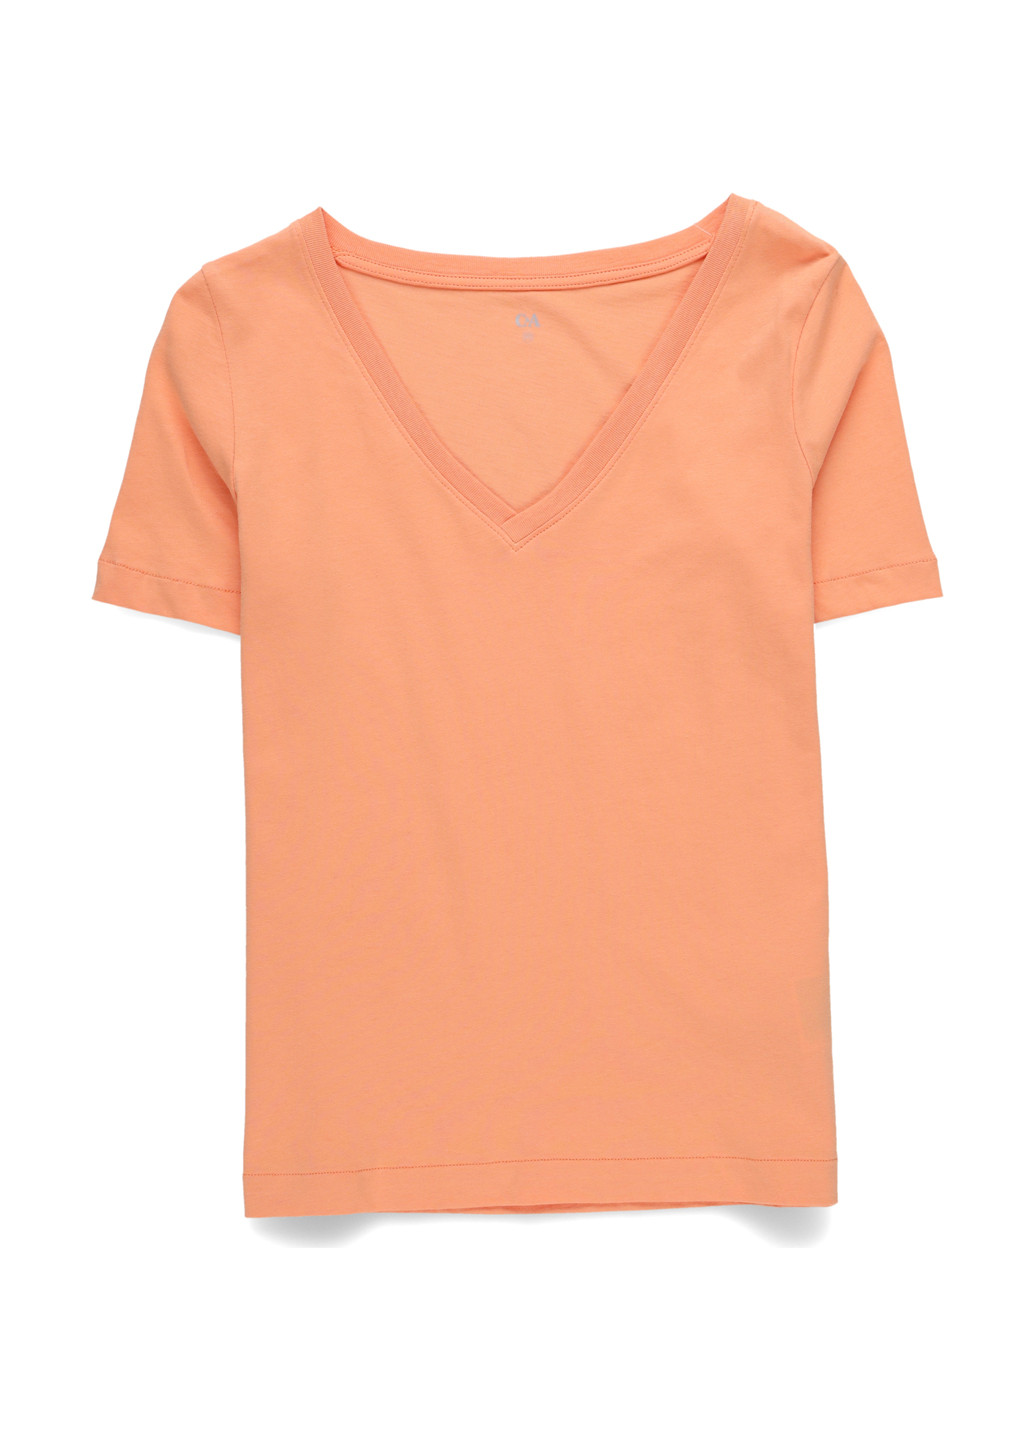 Светло-оранжевая летняя футболка C&A